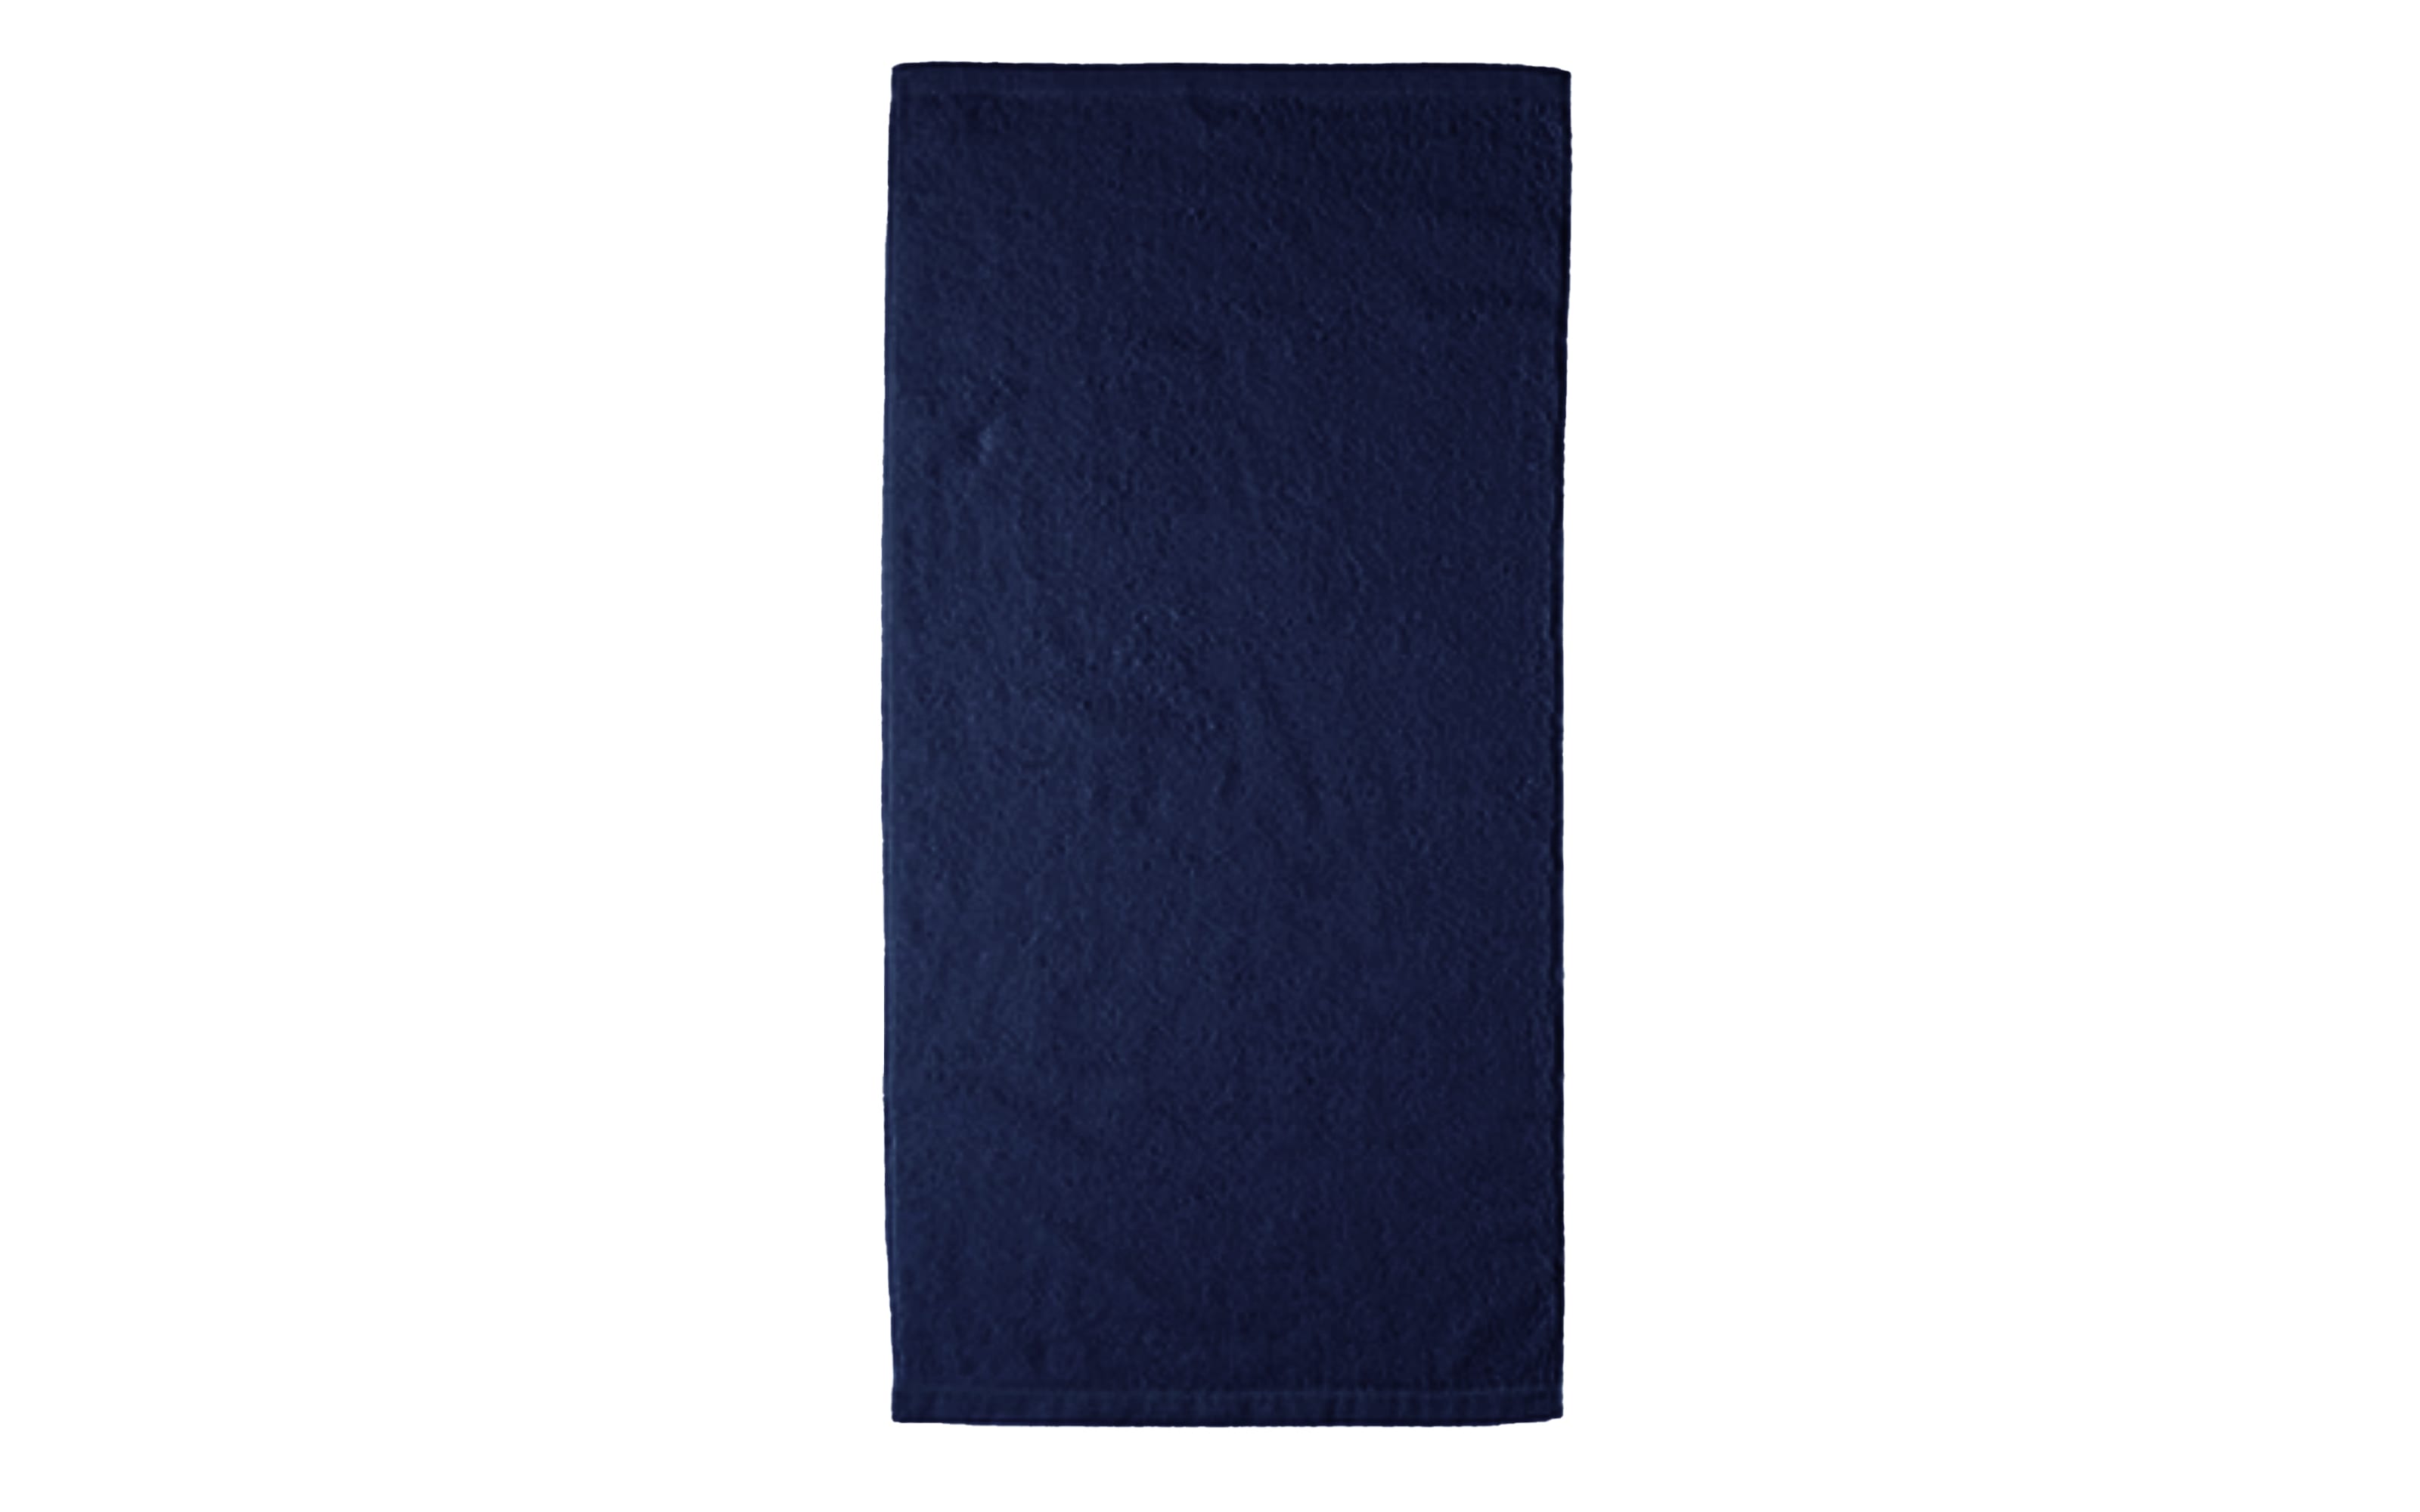 Handtuch Lifestyle Uni, Baumwolle, navy, 50 x 100 cm